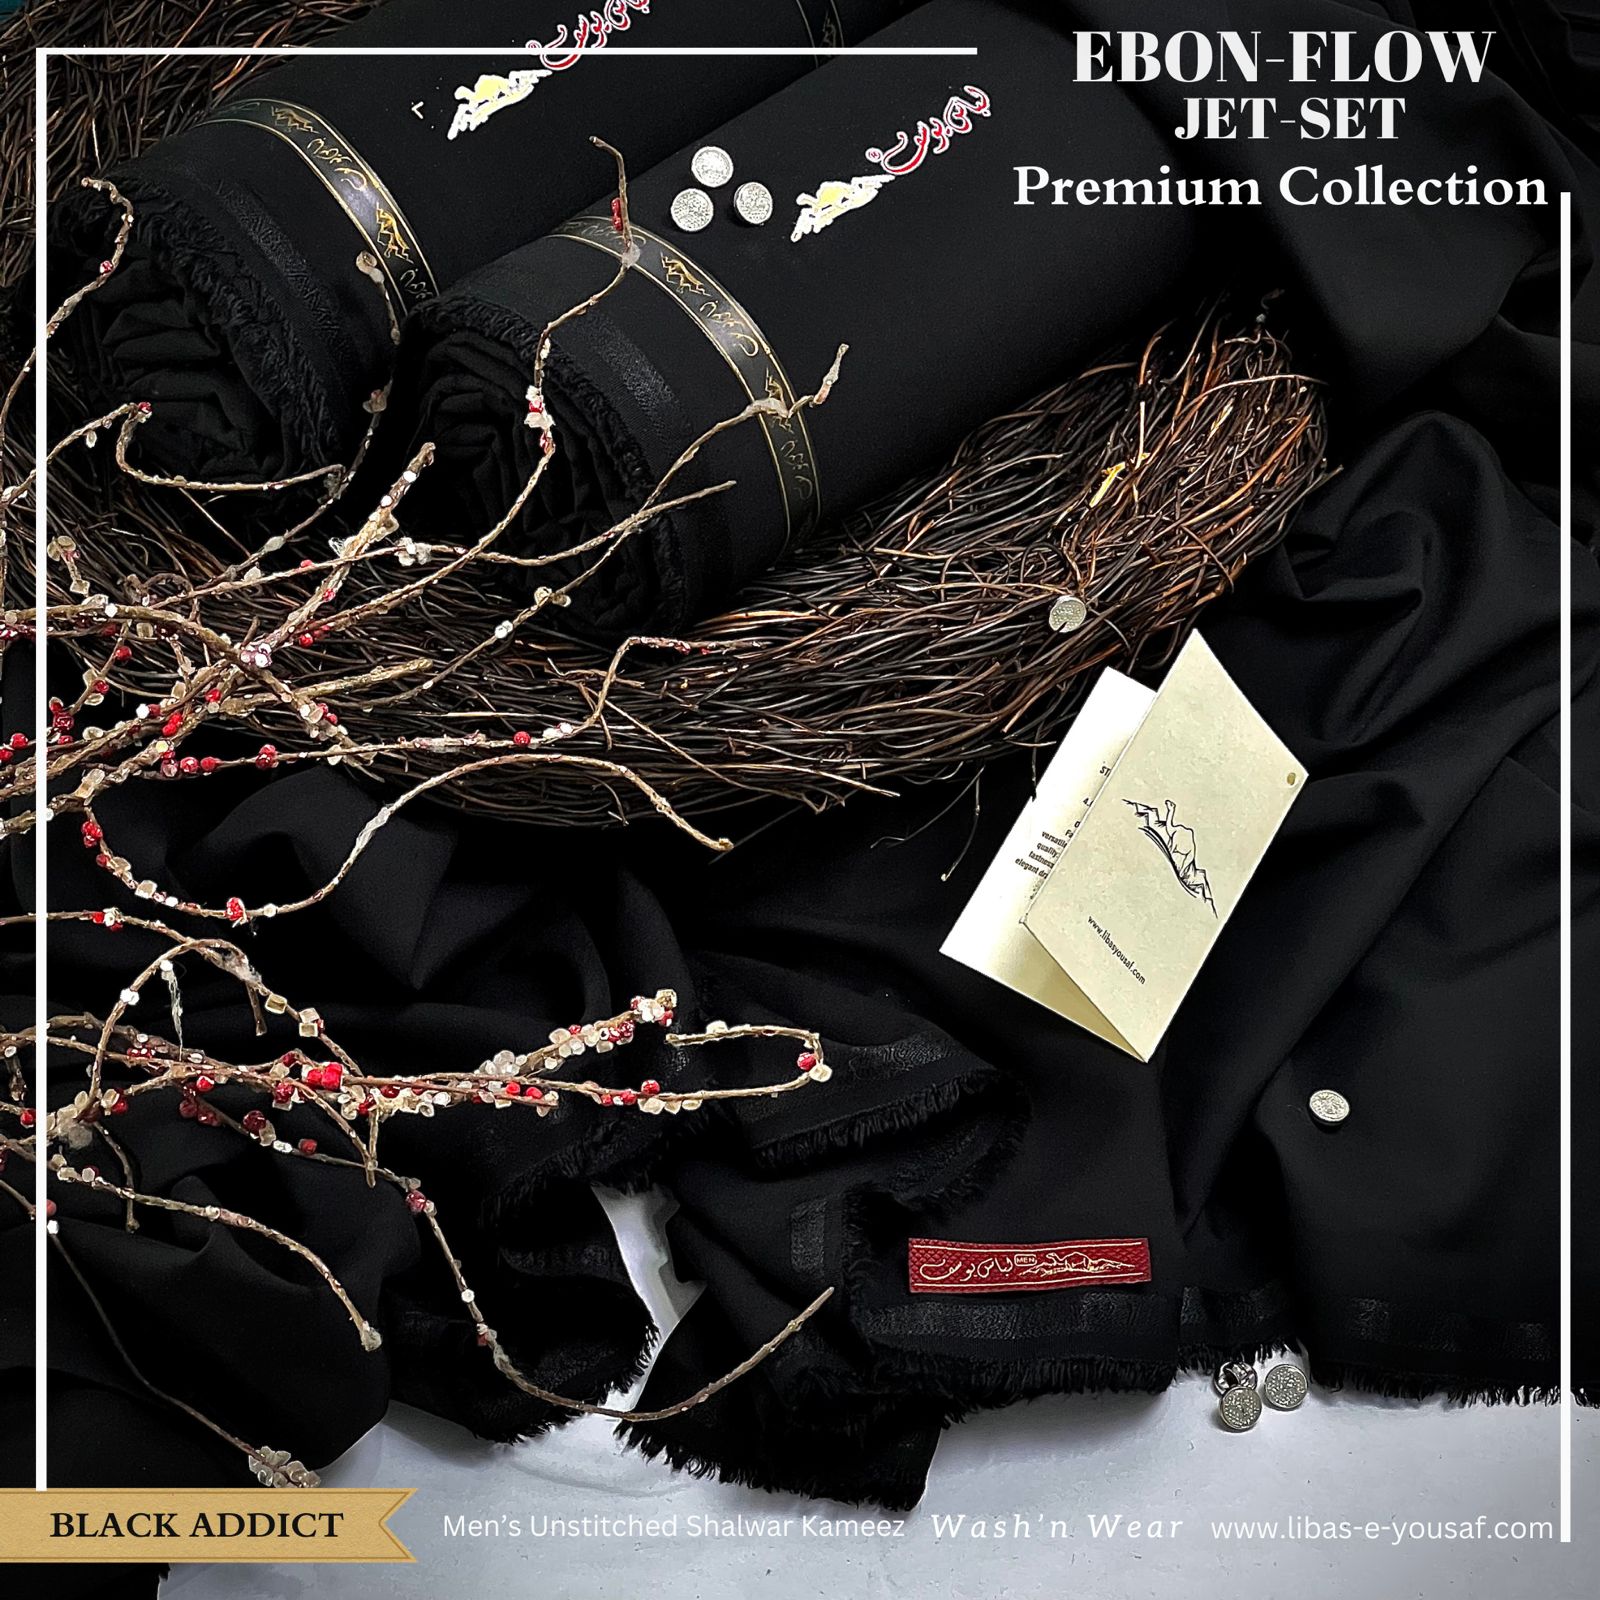 Libas-E-Yousaf EBON FLOW  Luxury BLACK Wash & Wear